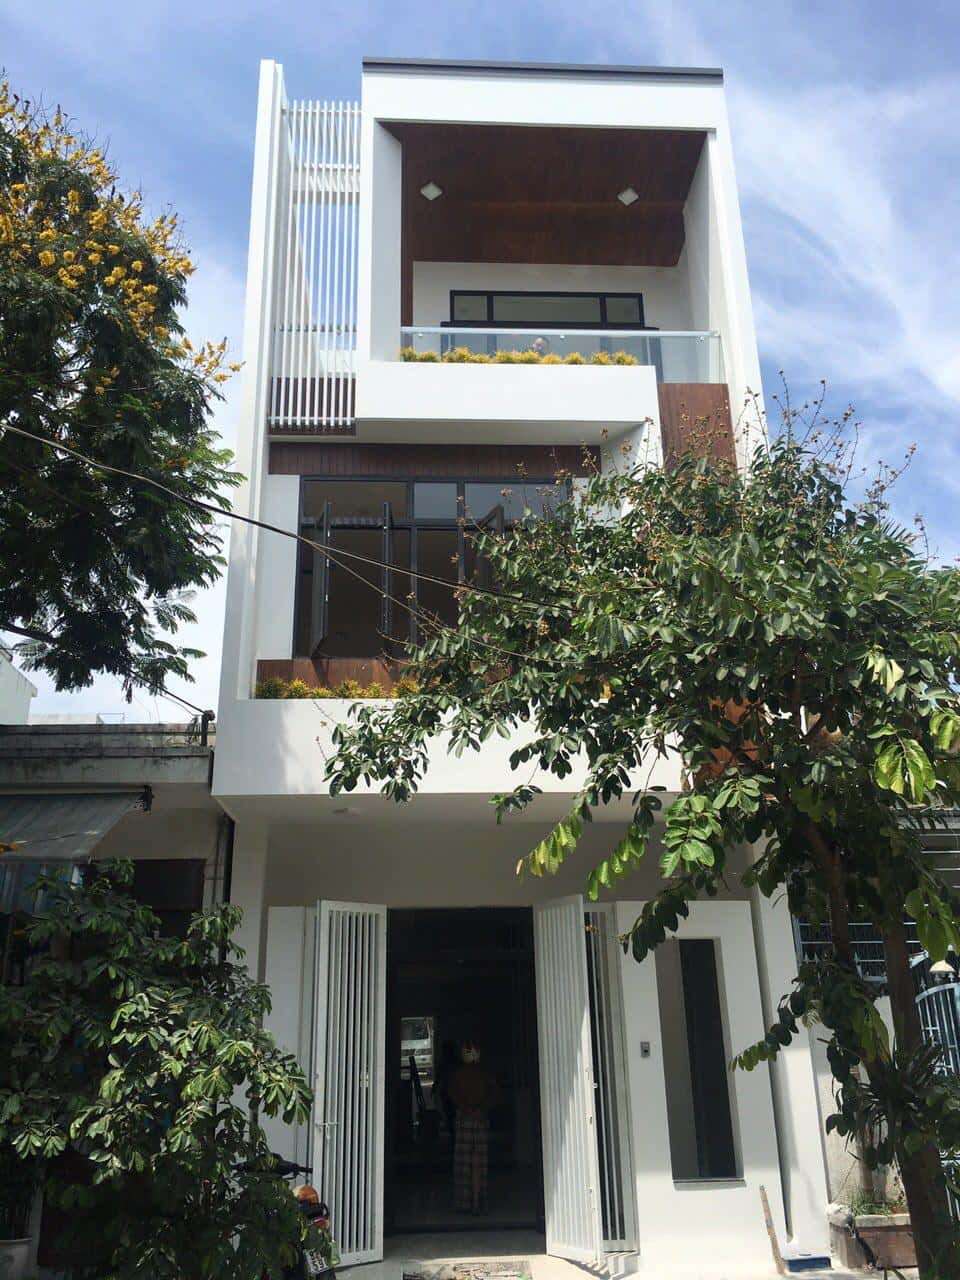 nha 3 tang dep hien dai 1 - Mẫu thiết kế nhà đẹp tại Nam Định